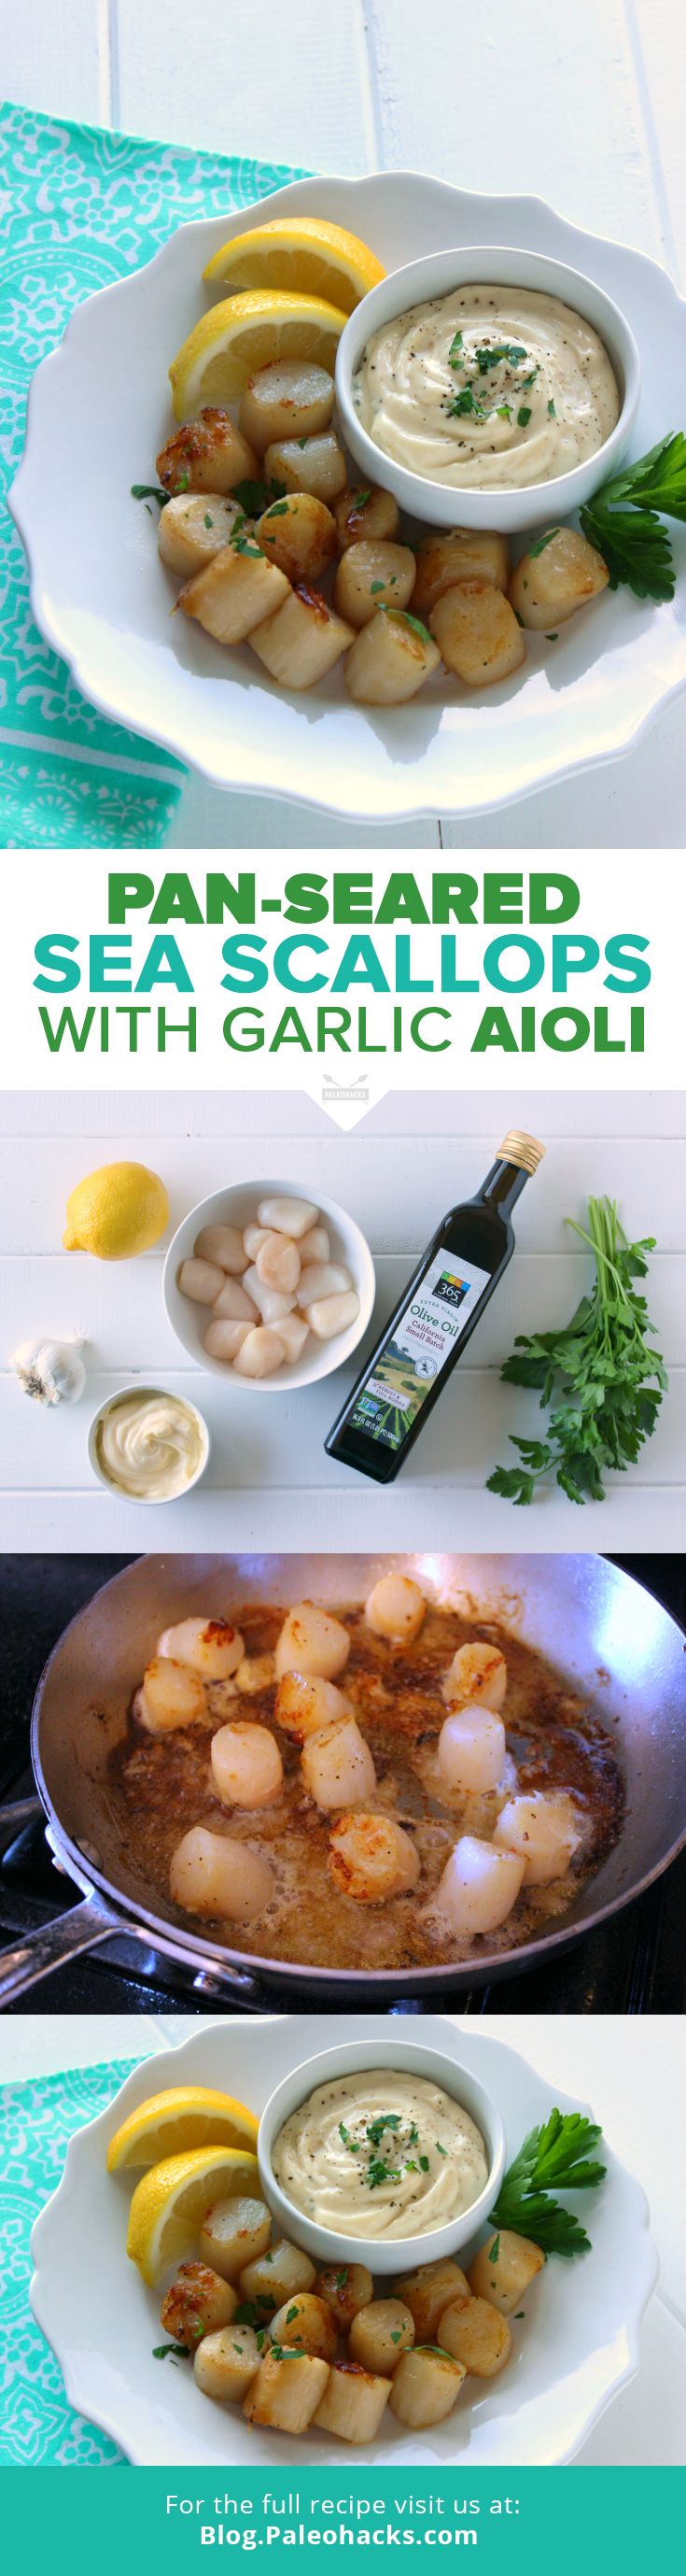 PIN_Pan-Seared_Sea_Scallops_with_Garlic_Aioli_new